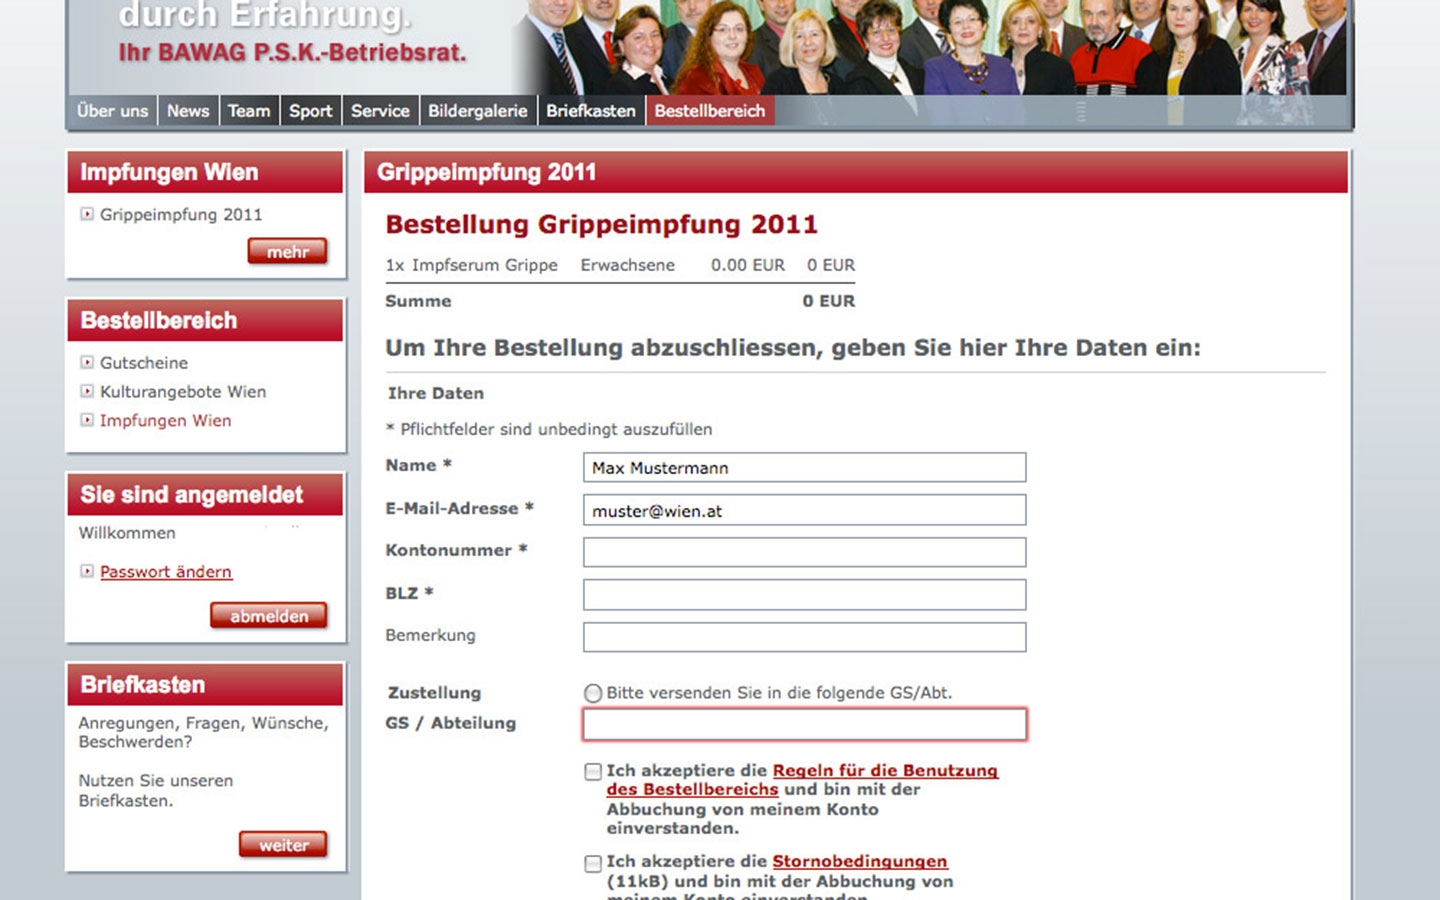 BAWAG PSK Betriebsrat | bawagpsk-betriebsrat.at | 2011 (Screen Only 03) © echonet communication / Auftraggeber